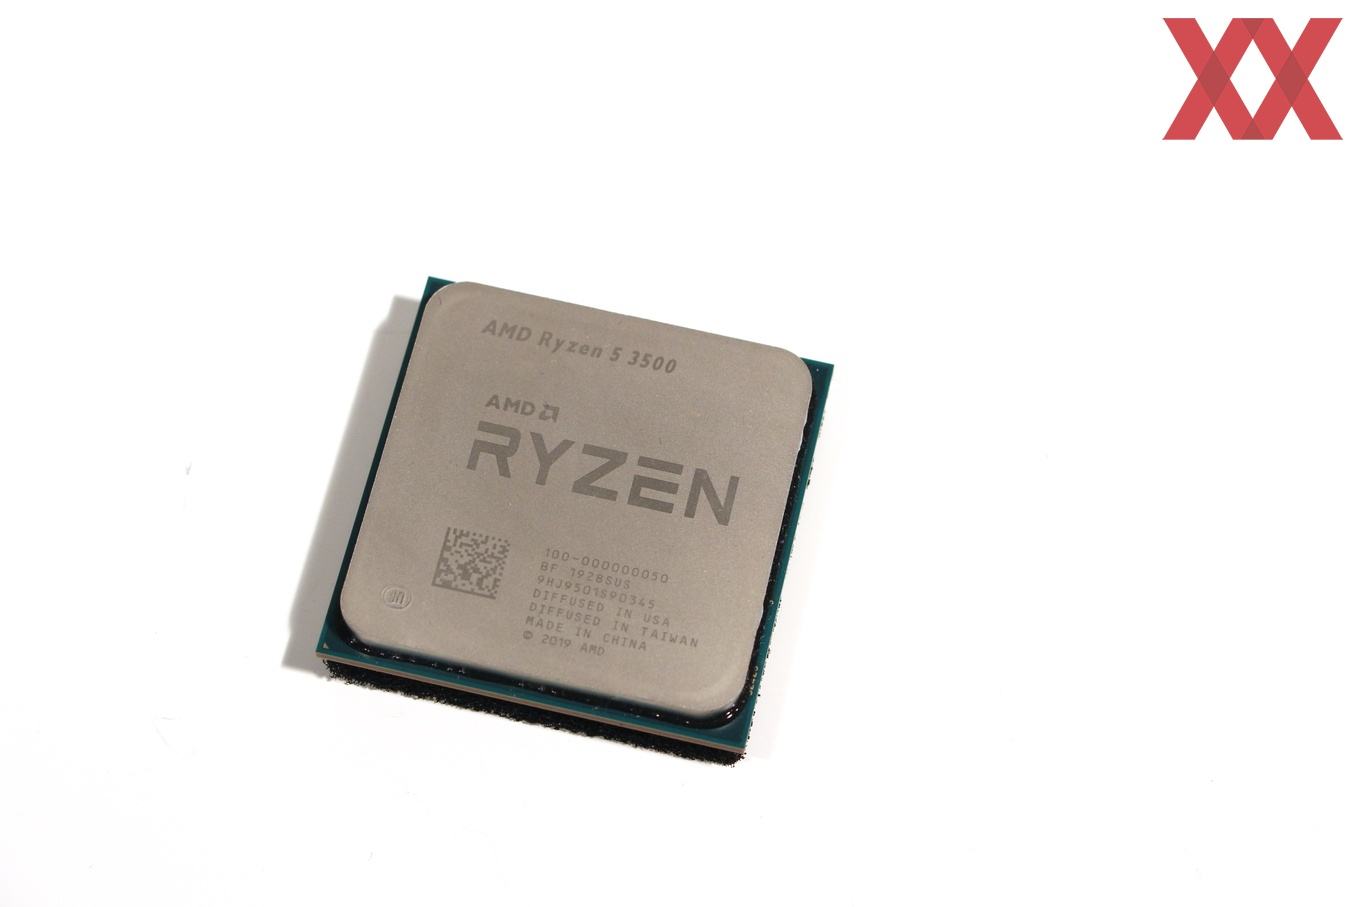 Тест и обзор: AMD Ryzen 5 3500 - выгодный шестиядерный процессор? -  Hardwareluxx Russia